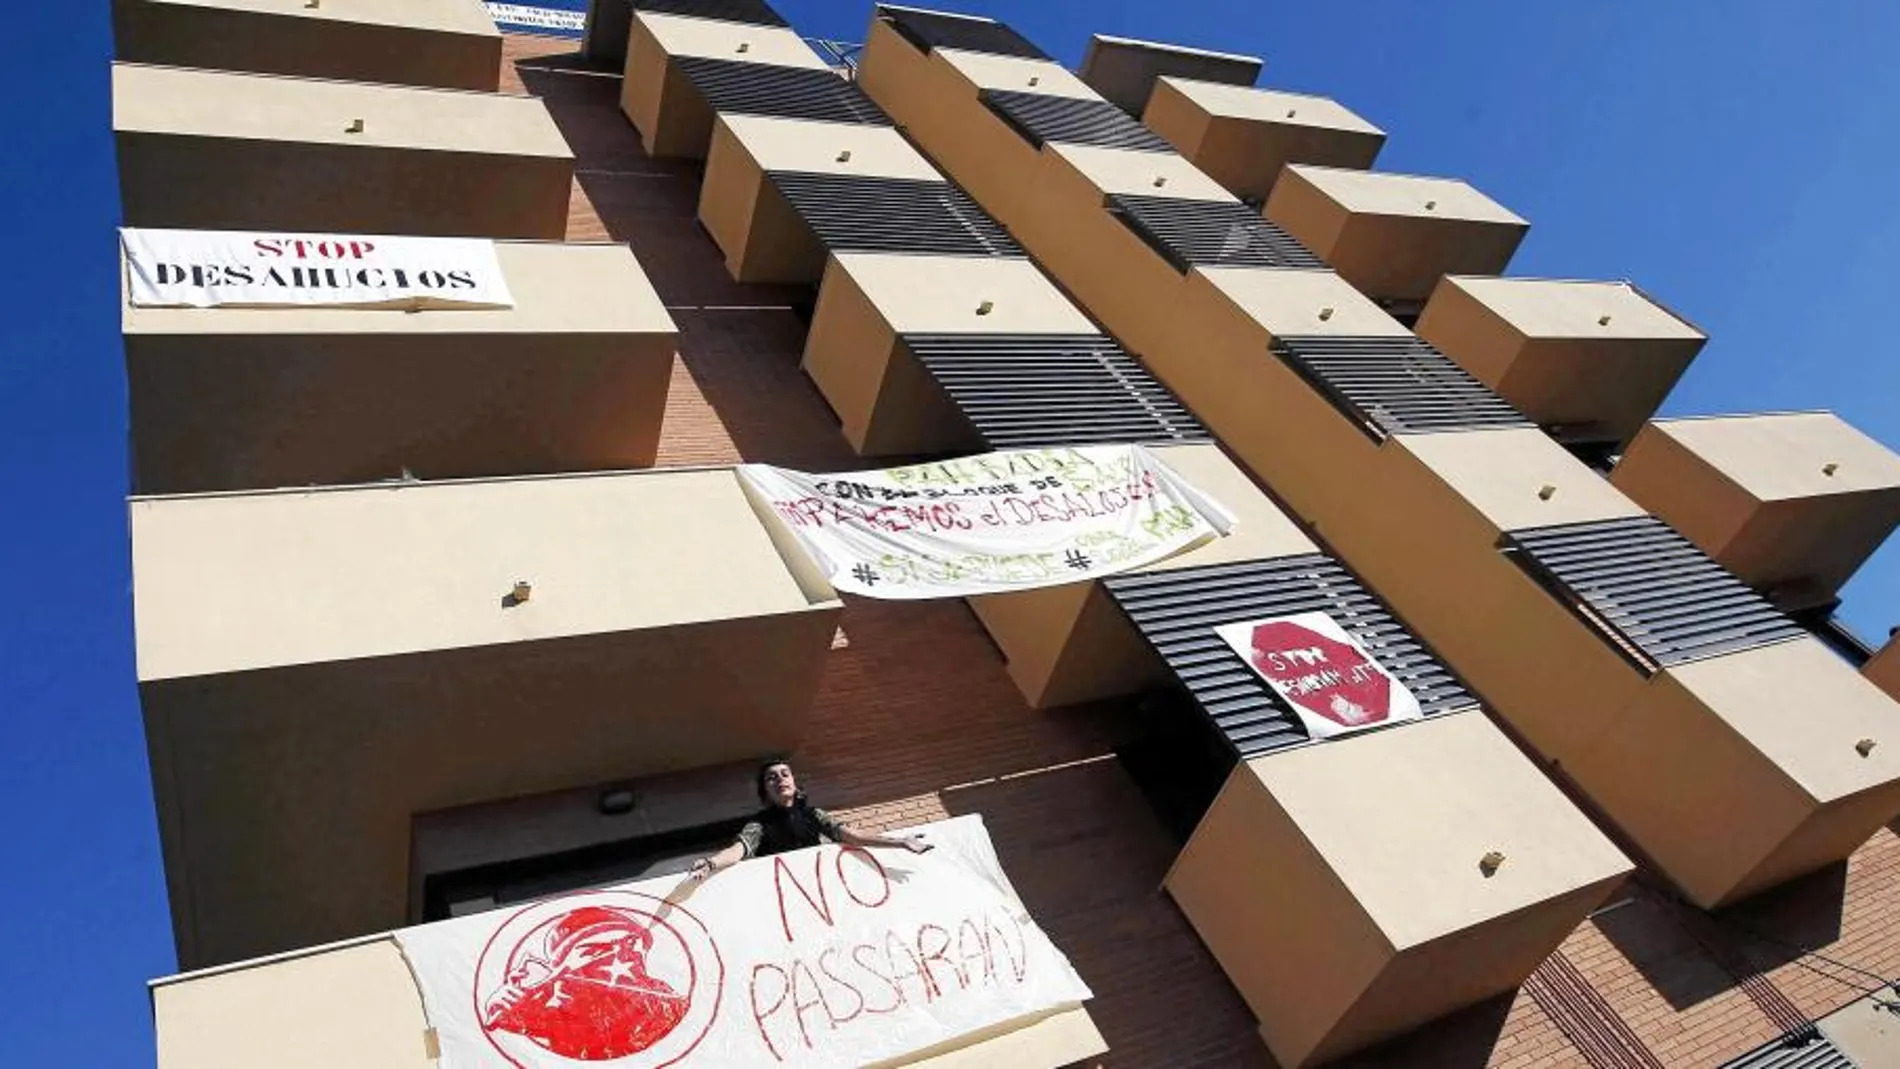 Los desahucios de viviendas es uno de los asuntos más polémicos en Cataluña en los últimos años